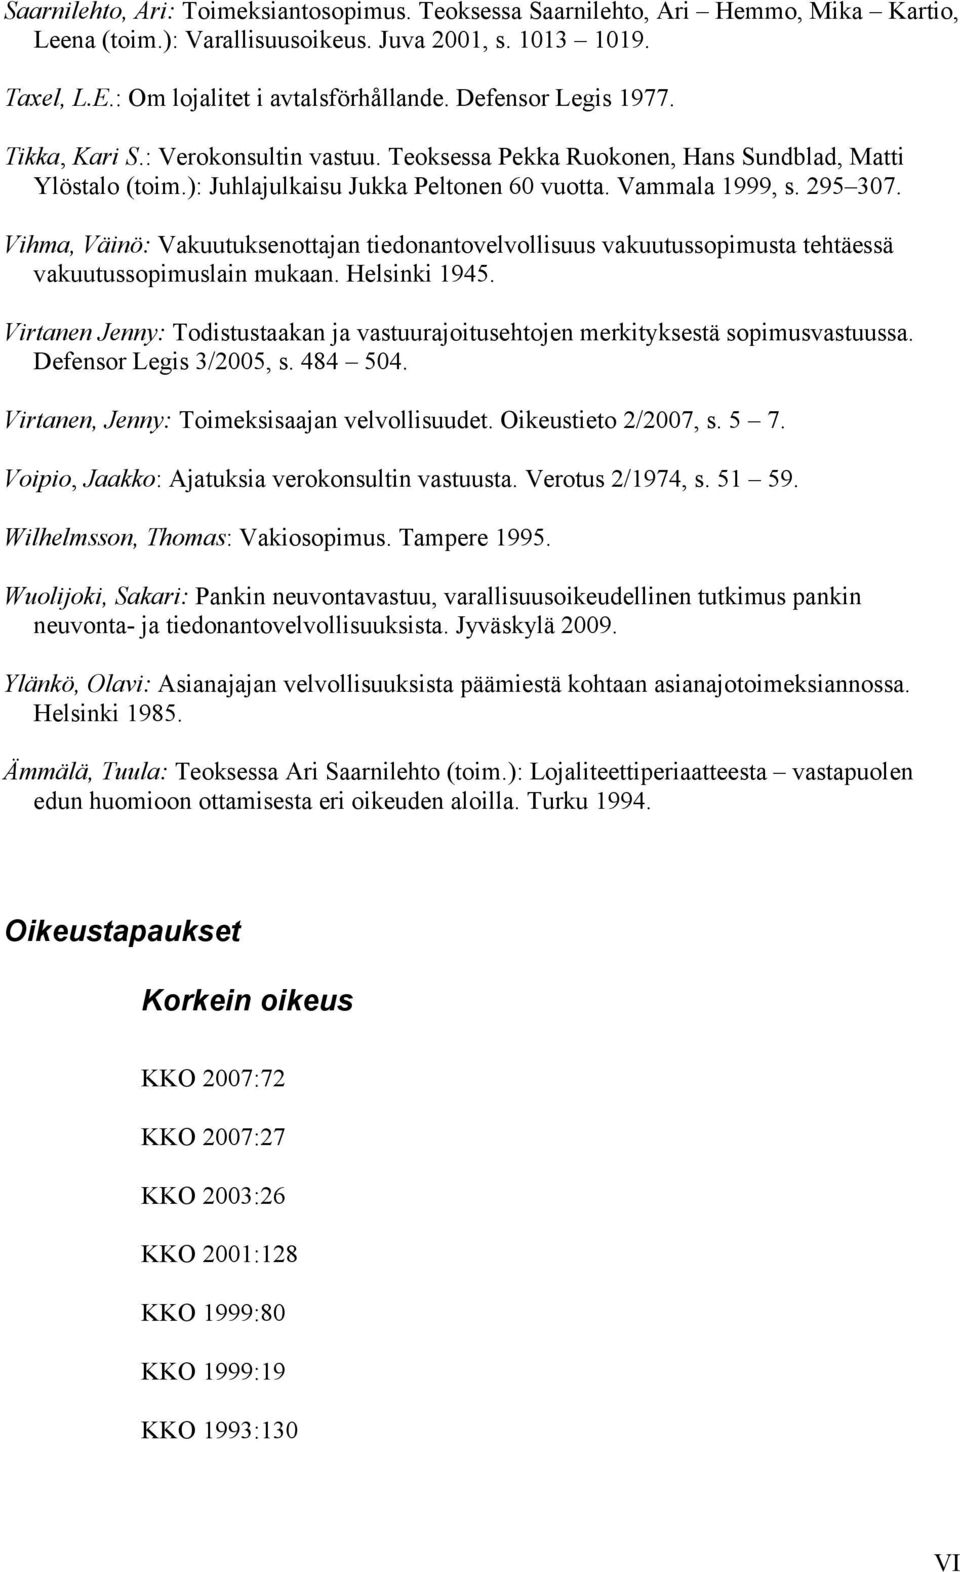 Vihma, Väinö: Vakuutuksenottajan tiedonantovelvollisuus vakuutussopimusta tehtäessä vakuutussopimuslain mukaan. Helsinki 1945.